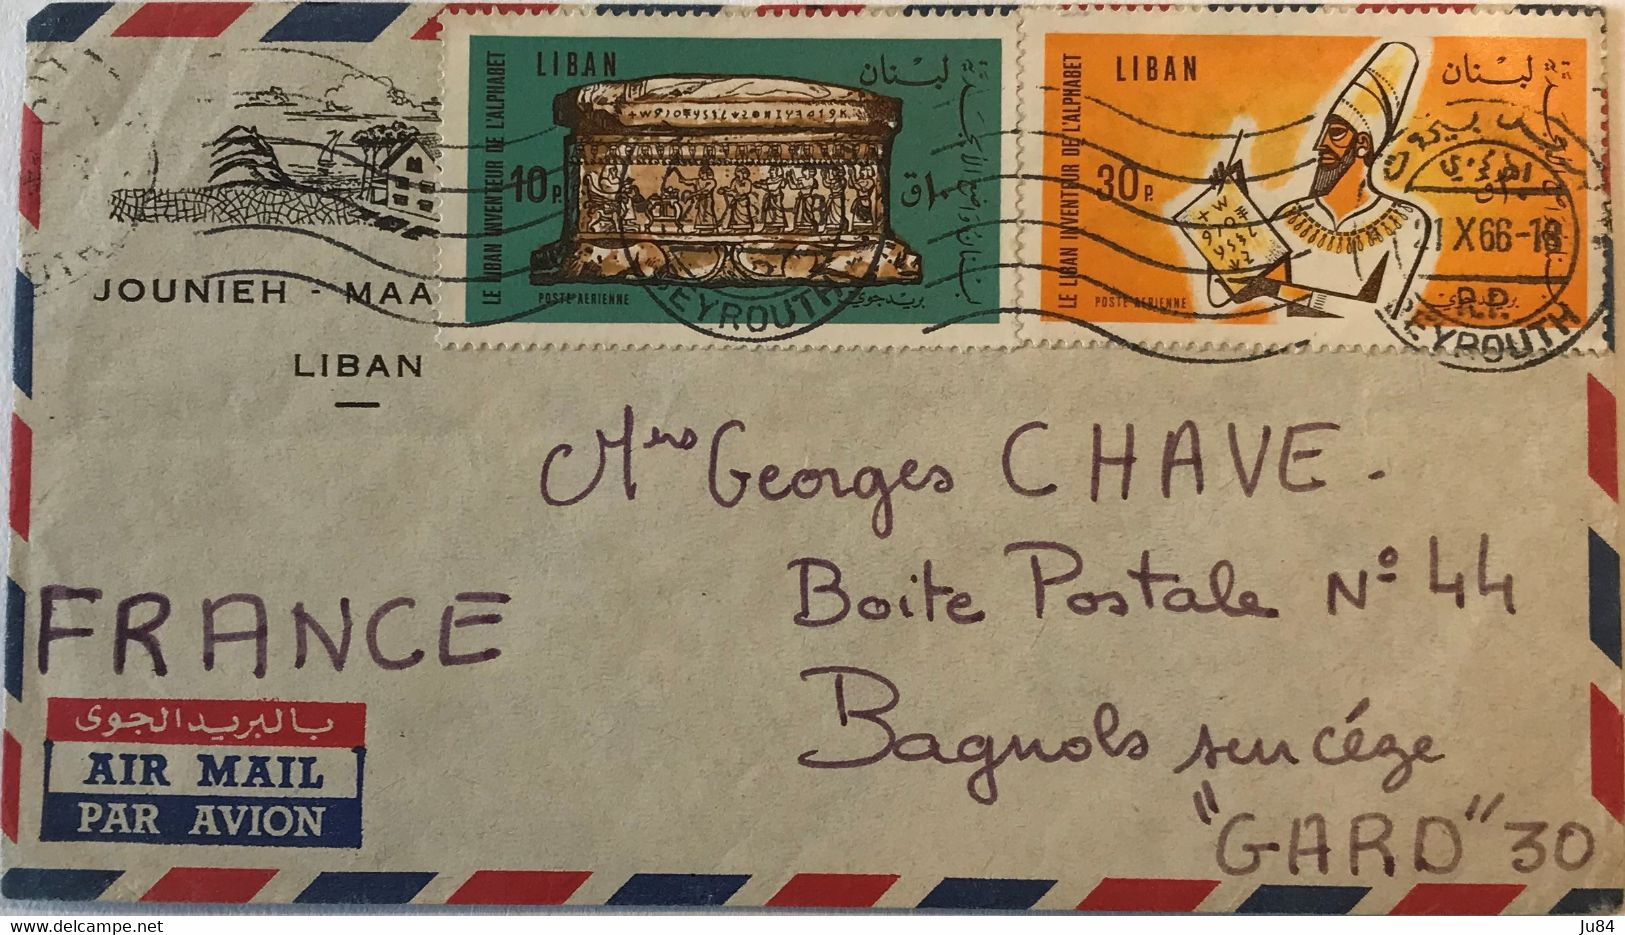 Liban - Beyrouth R.P. - Lettre Avion Entête Jounieh - Maameltein L'Auberge - Pour Bagnols-sur-Cèze (France) - 1966 - Lebanon